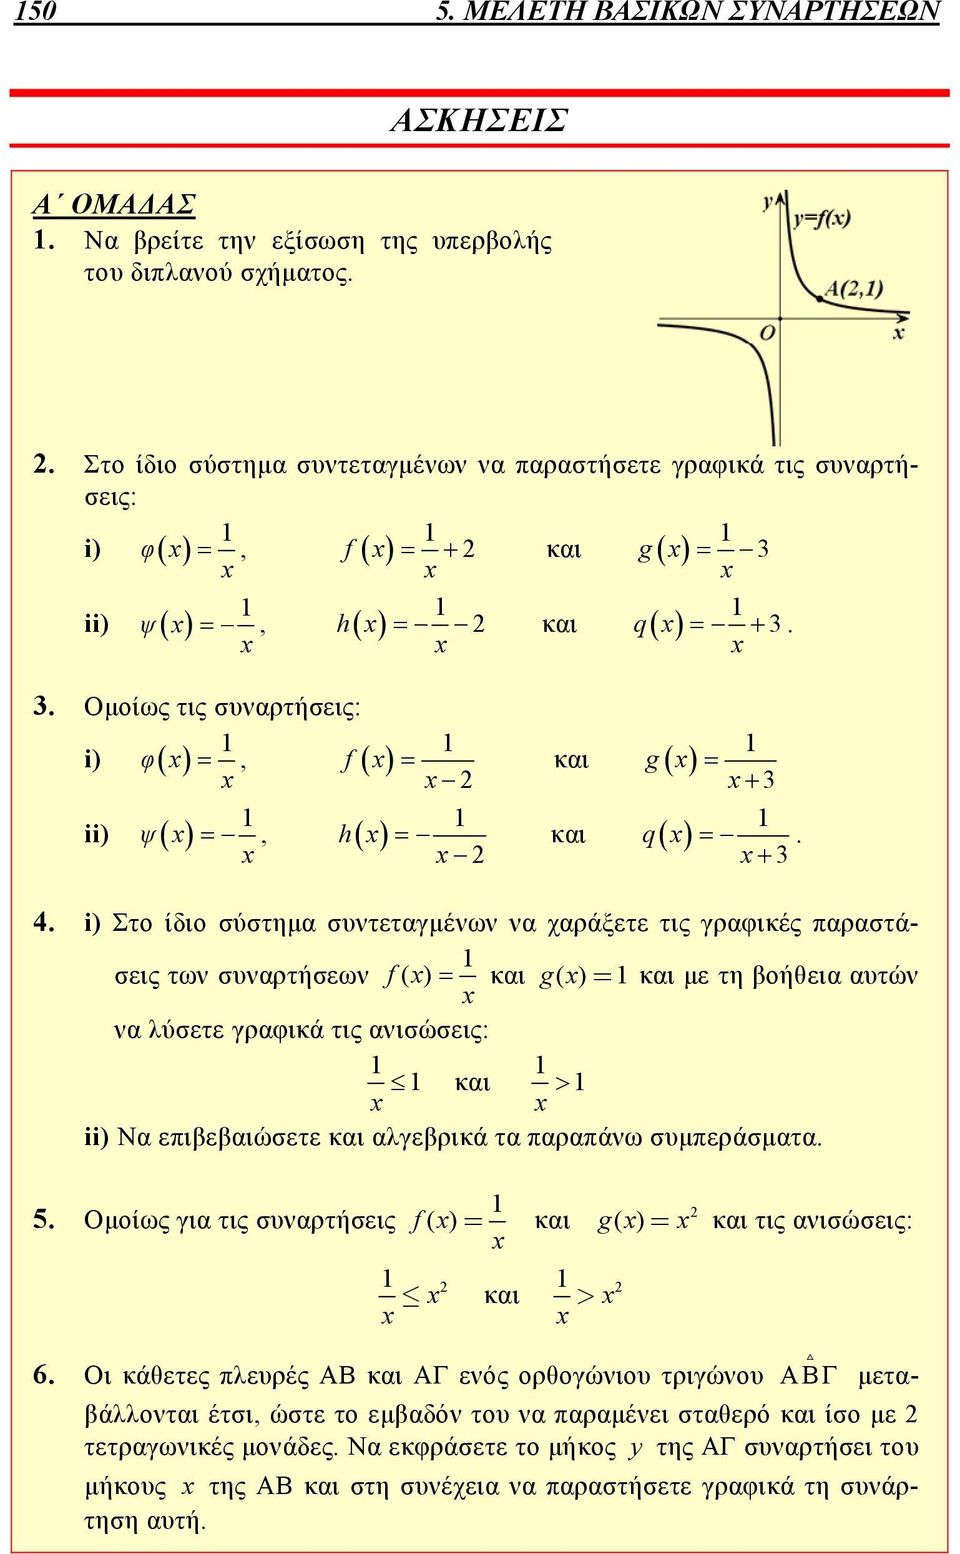 i) Στο ίδιο σύστημα συντεταγμένων να χαράξετε τις γραφικές παραστάσεις των συναρτήσεων f( ) και g= ( ) και με τη βοήθεια αυτών να λύσετε γραφικά τις ανισώσεις: και ii) Να επιβεβαιώσετε και αλγεβρικά